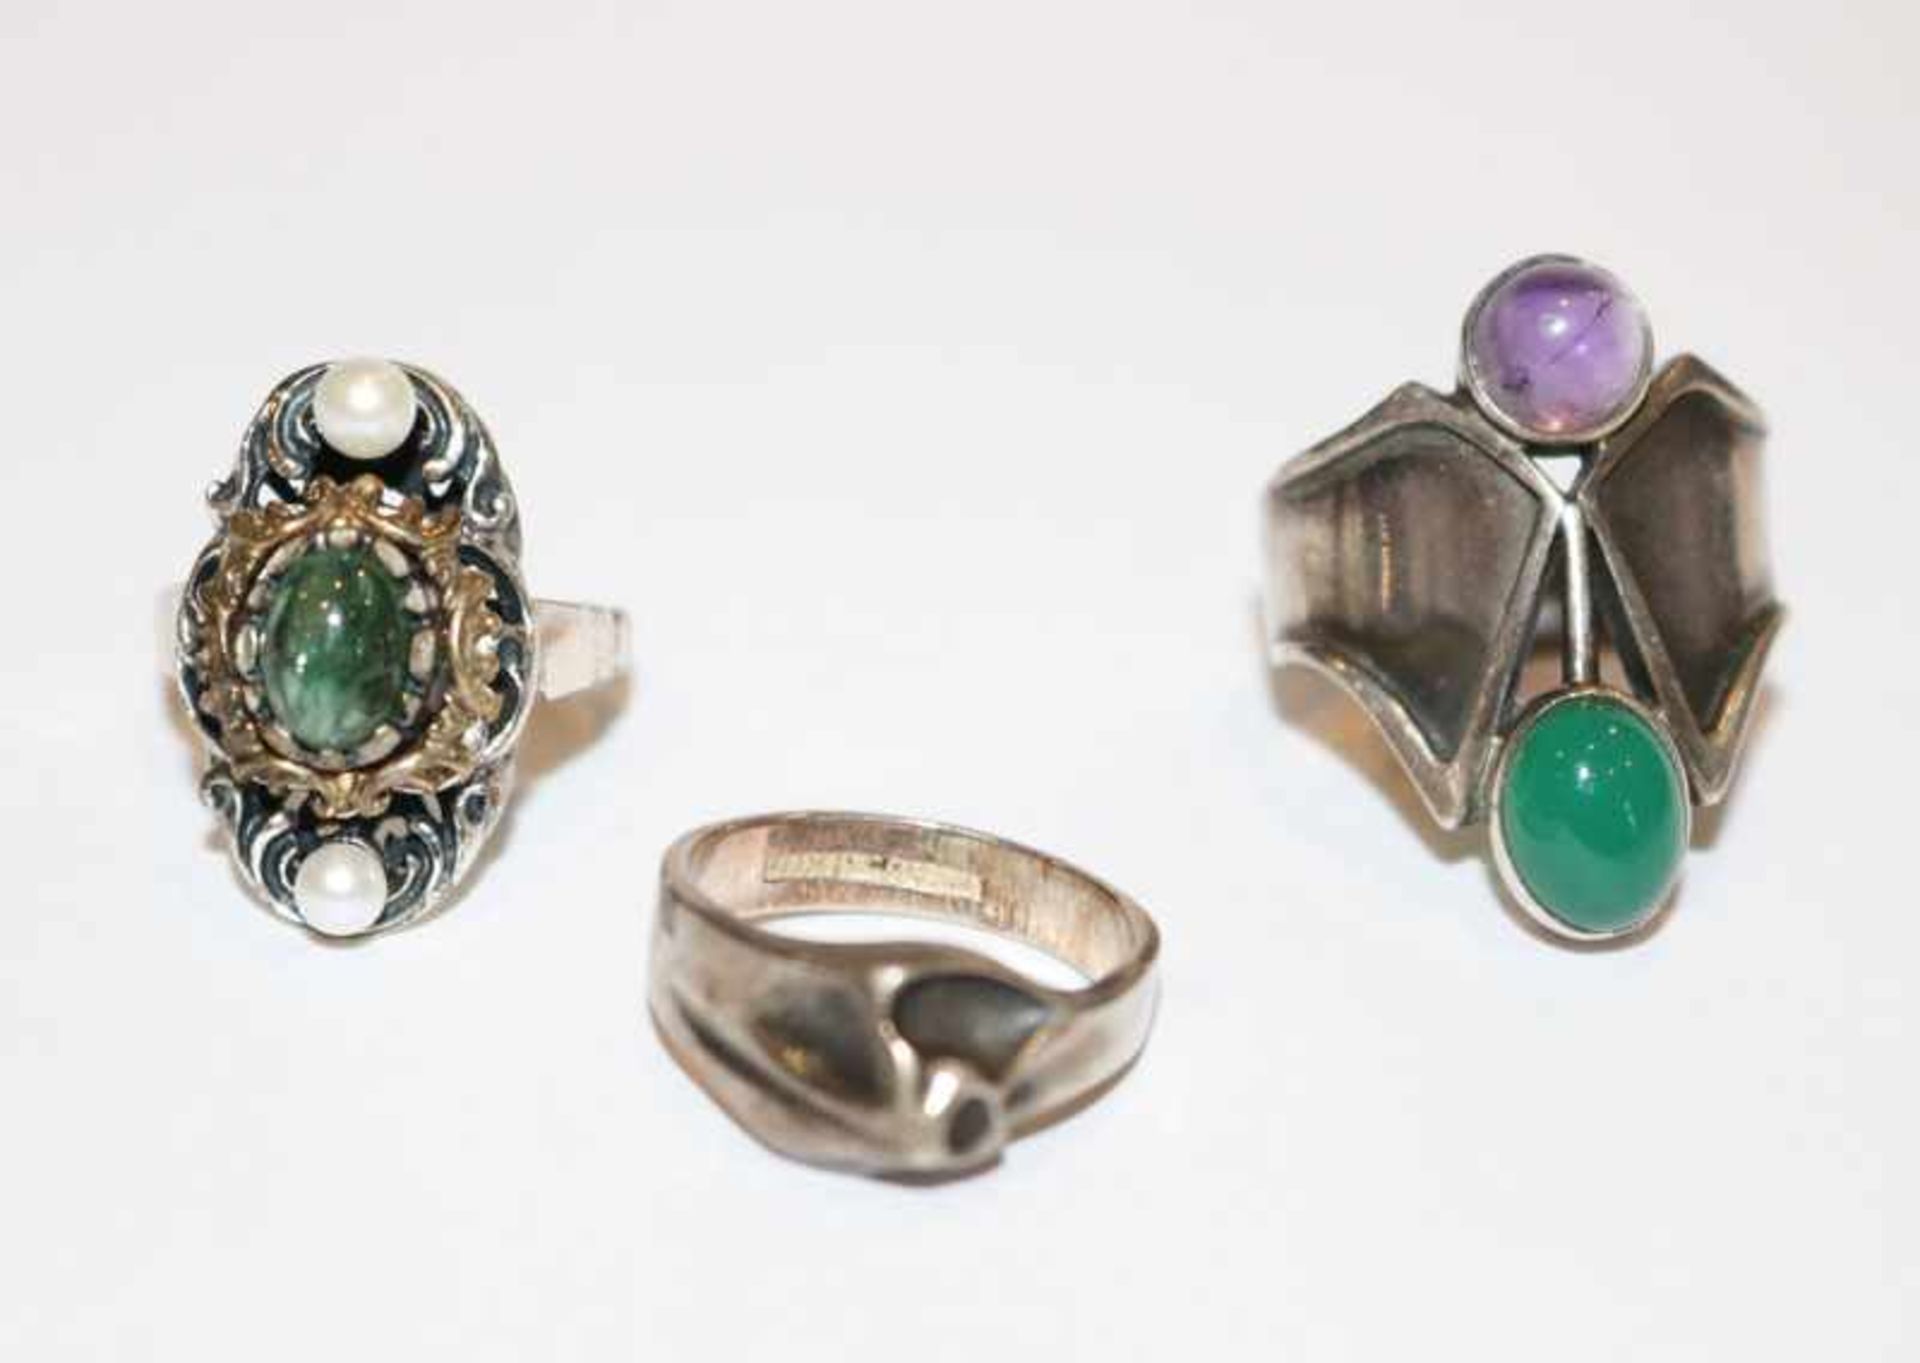 3 Silber Ringe, 2 davon mit Farbsteinen, Gr. 53/54